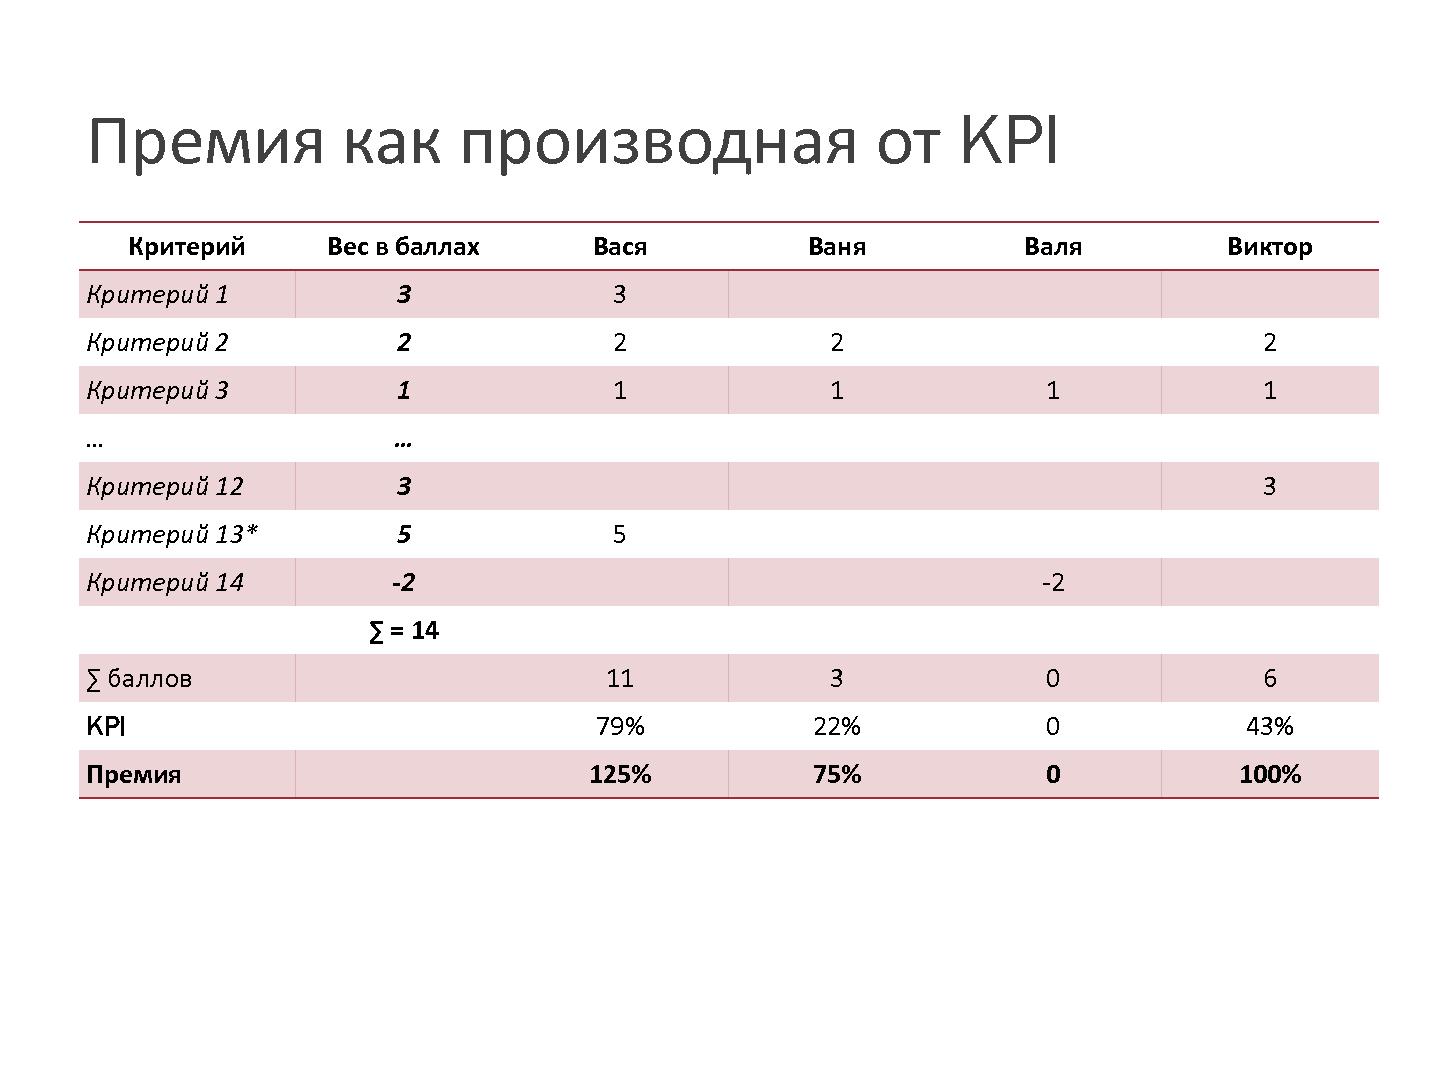 Файл:KPI разработчика (Евгения Фирсова, SECR-2013).pdf